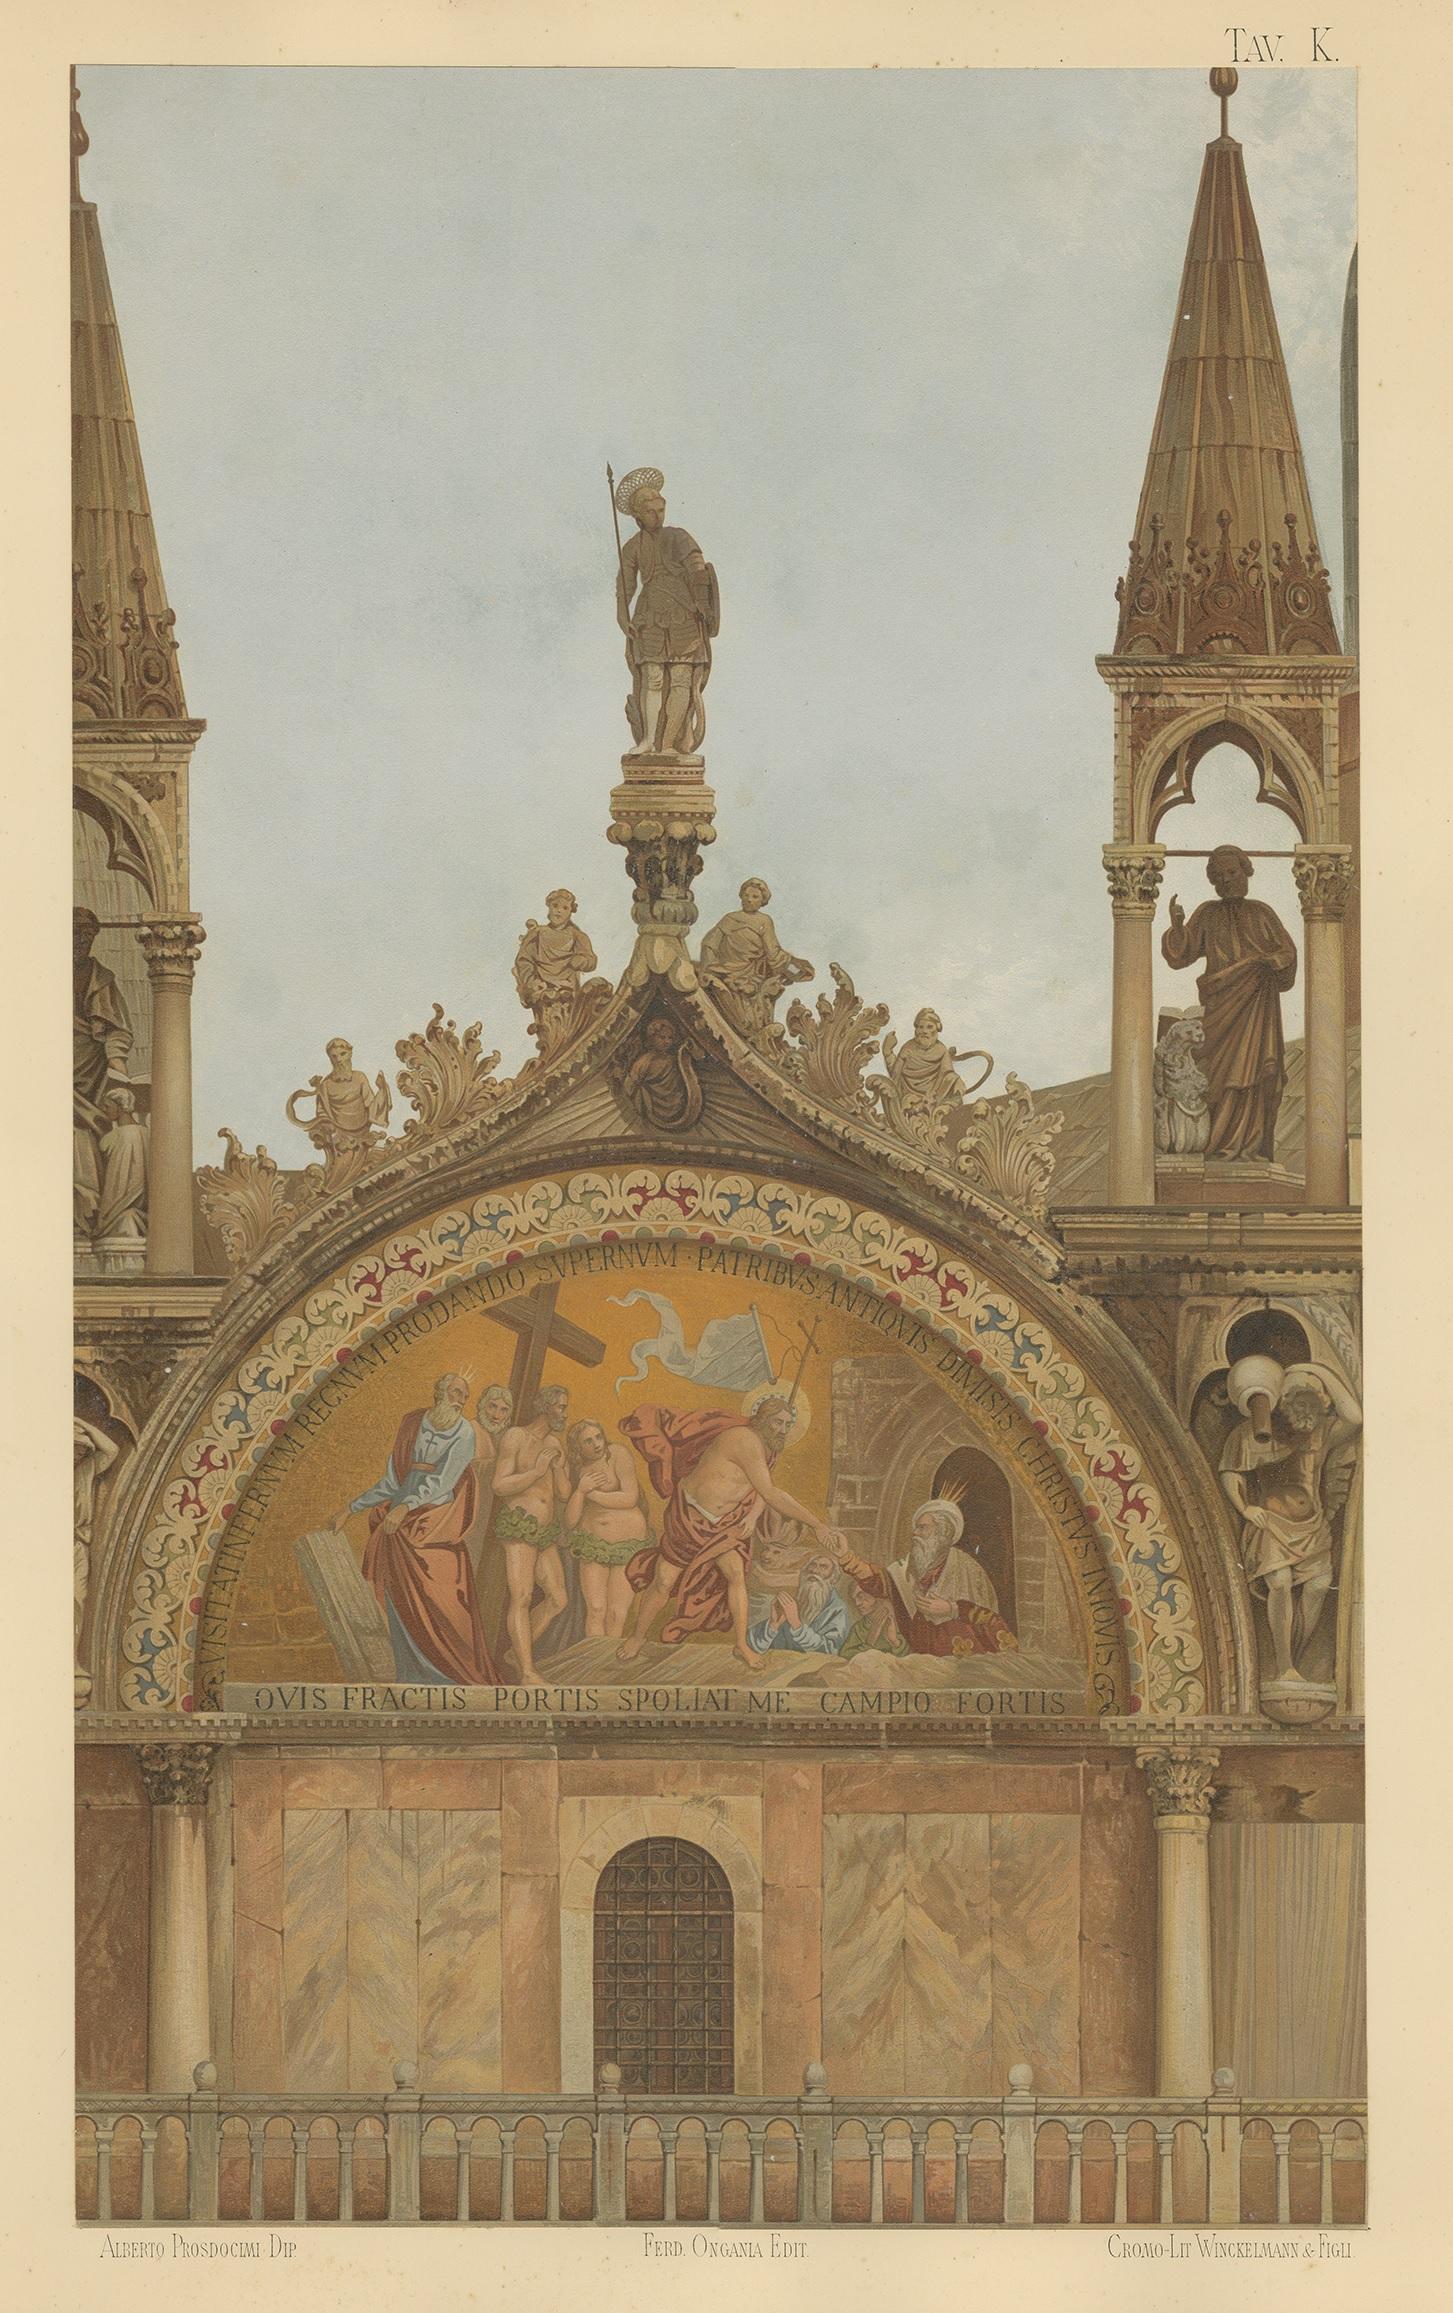 Grande chromolithographie du portail de San Pietro de la Basilique de San Marco, Venise, Italie. Cette impression provient de la 